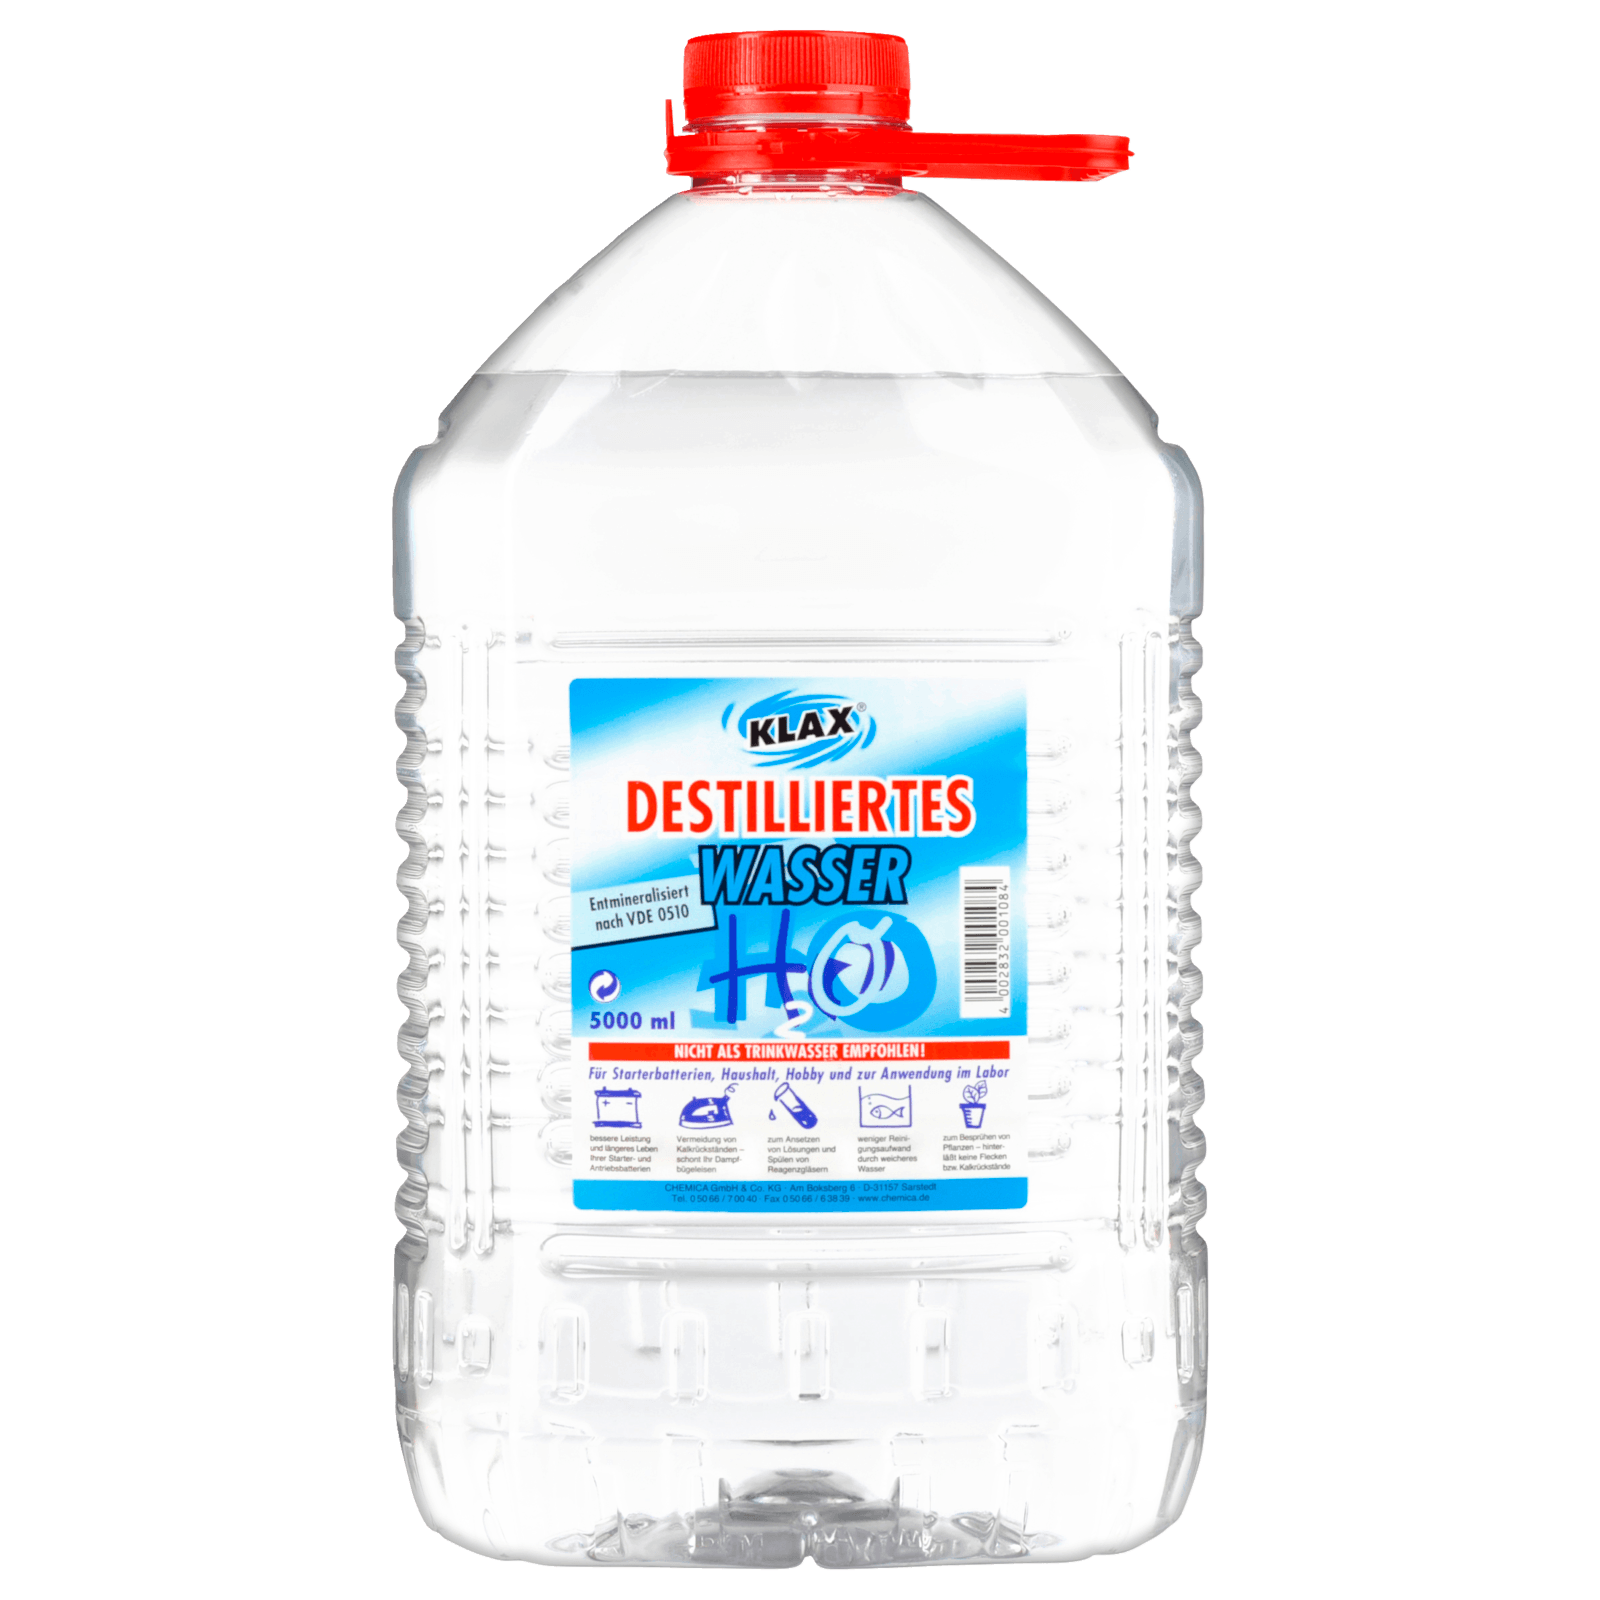 Destilliertes Wasser 5l